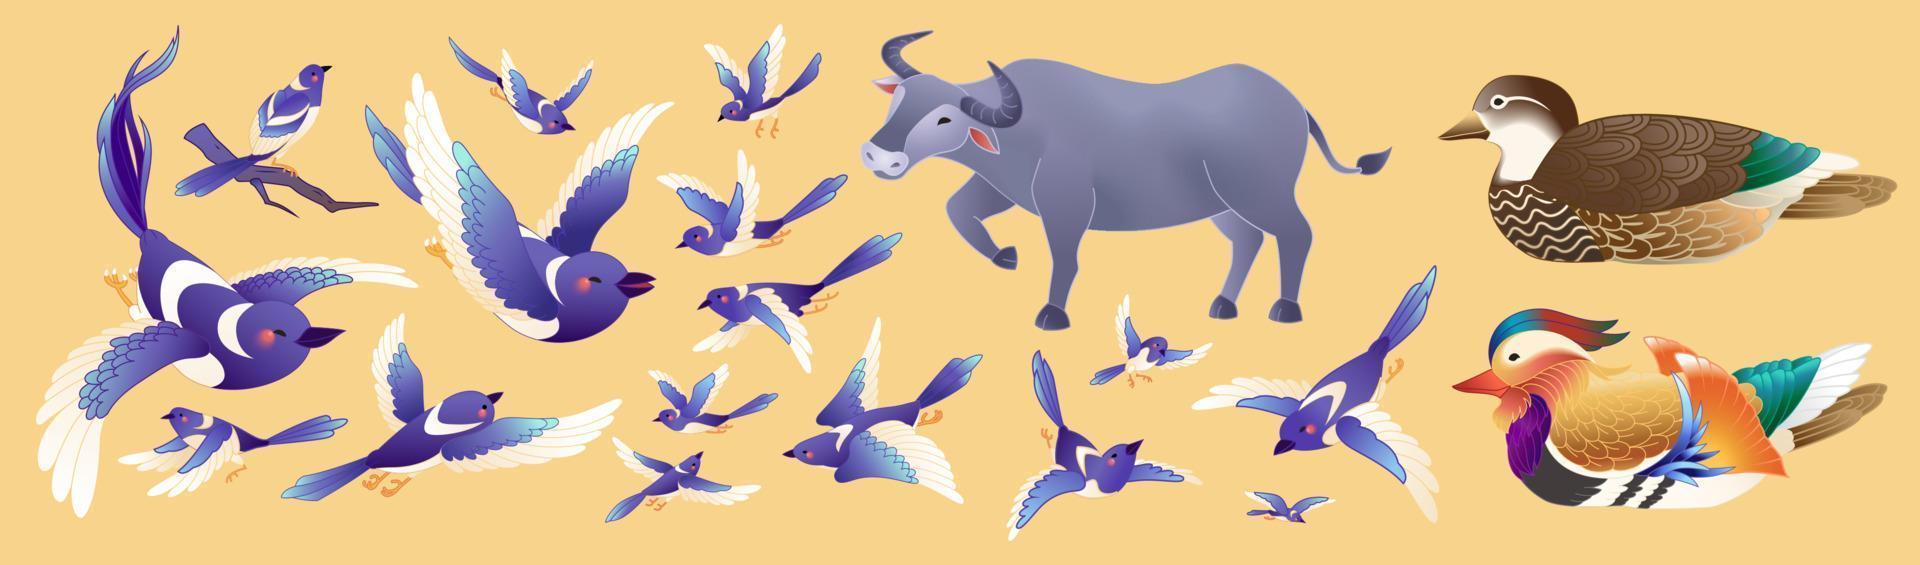 blå skata och djur för qixi festival. de djur- tecken med annorlunda poser för kinesisk hjärtans legend på orange bakgrund vektor